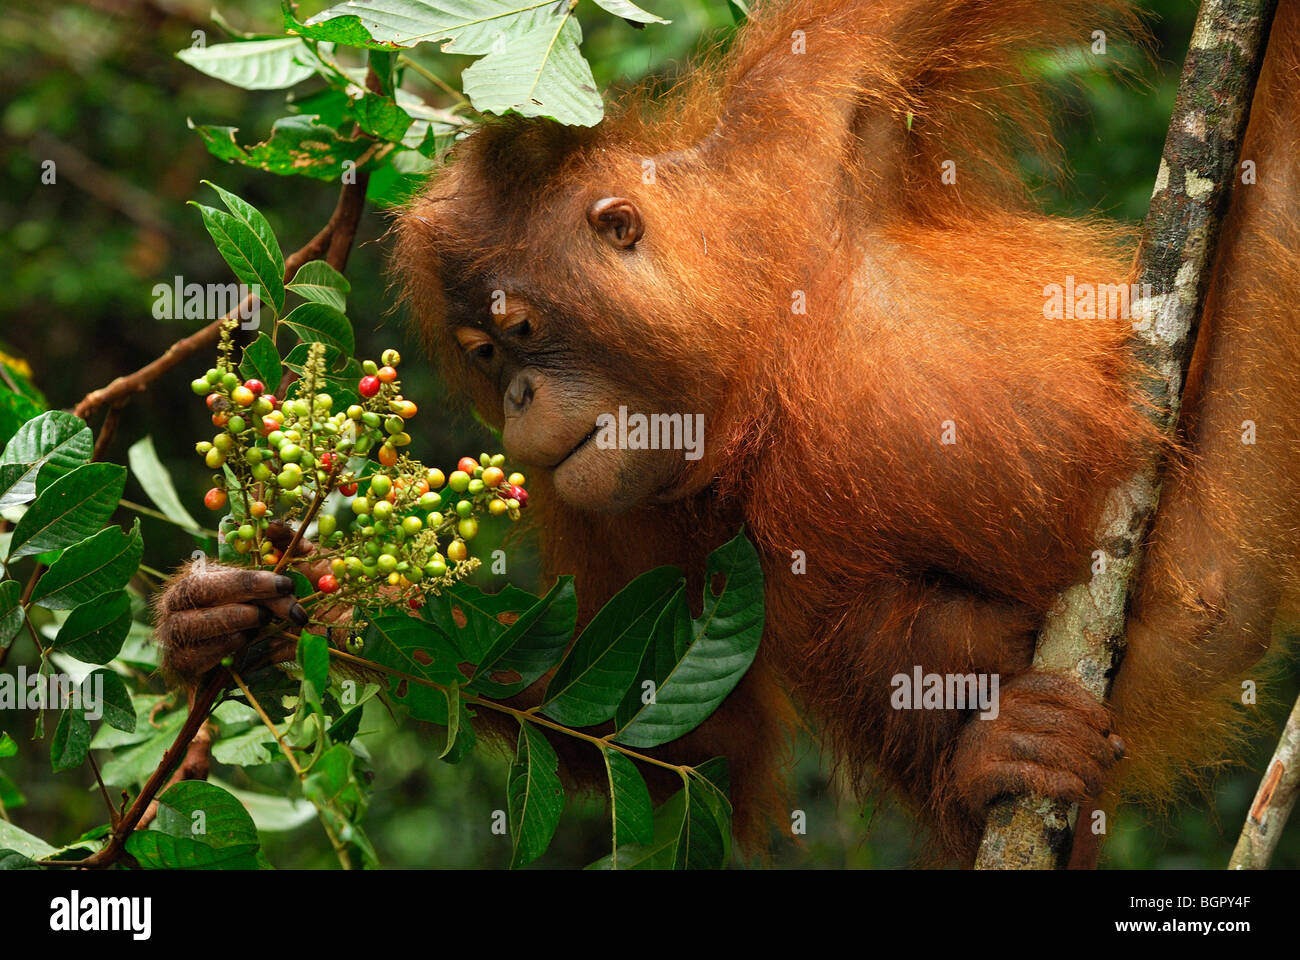 L'orang-outan de Bornéo (Pongo pygmaeus), manger des fruits, qui fuient le camp, parc national de Tanjung Puting, Kalimantan, Bornéo, Indonésie Banque D'Images